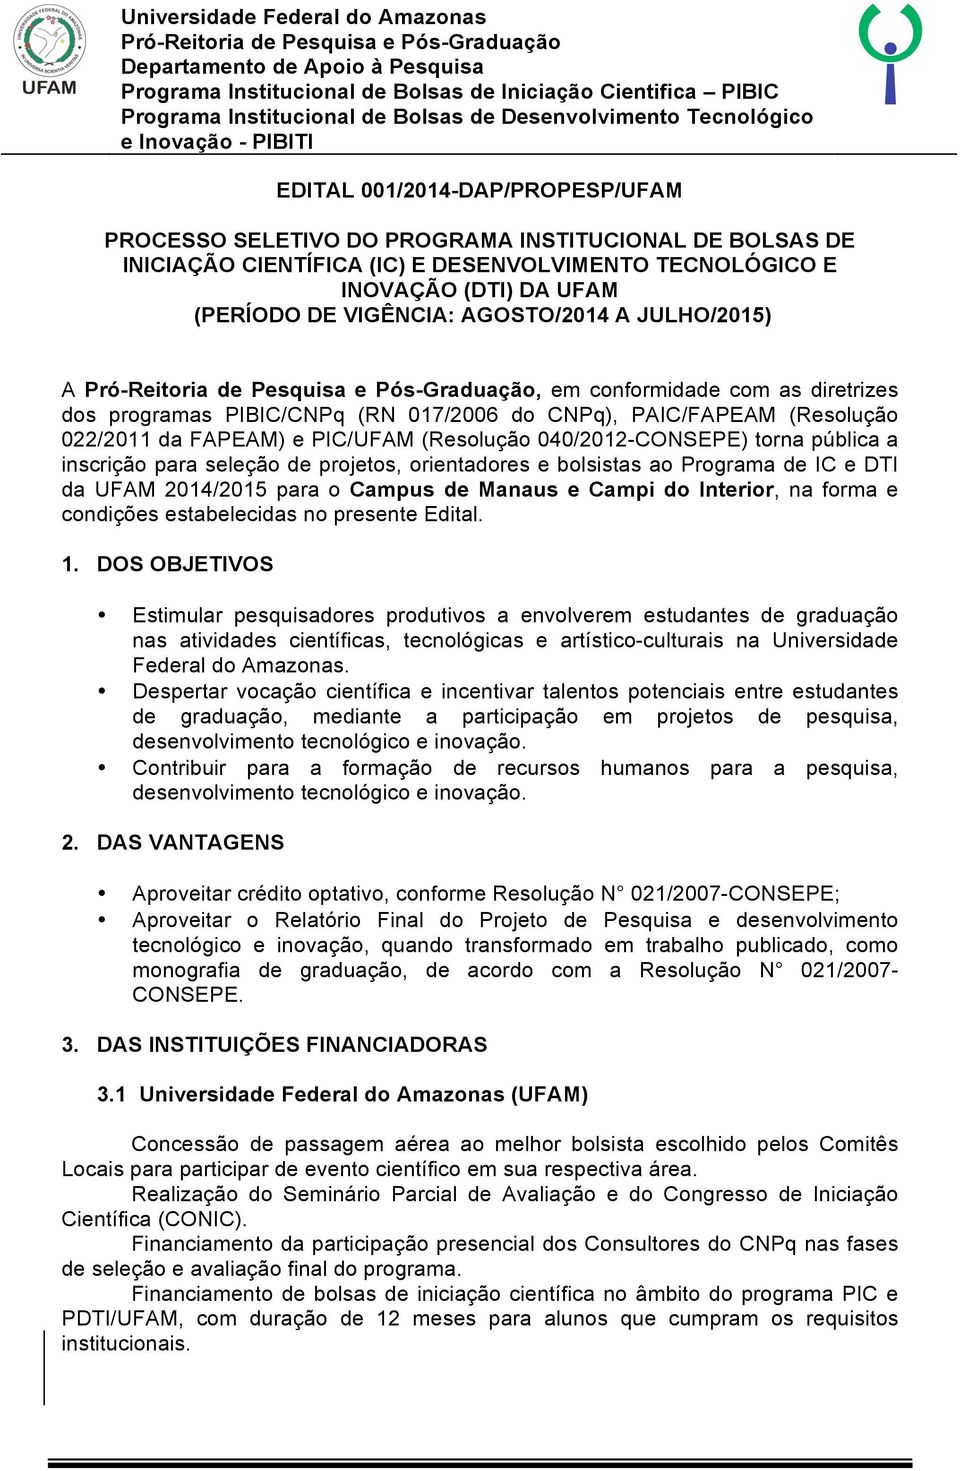 pública a inscrição para seleção de projetos, orientadores e bolsistas ao Programa de IC e DTI da UFAM 2014/2015 para o Campus de Manaus e Campi do Interior, na forma e condições estabelecidas no